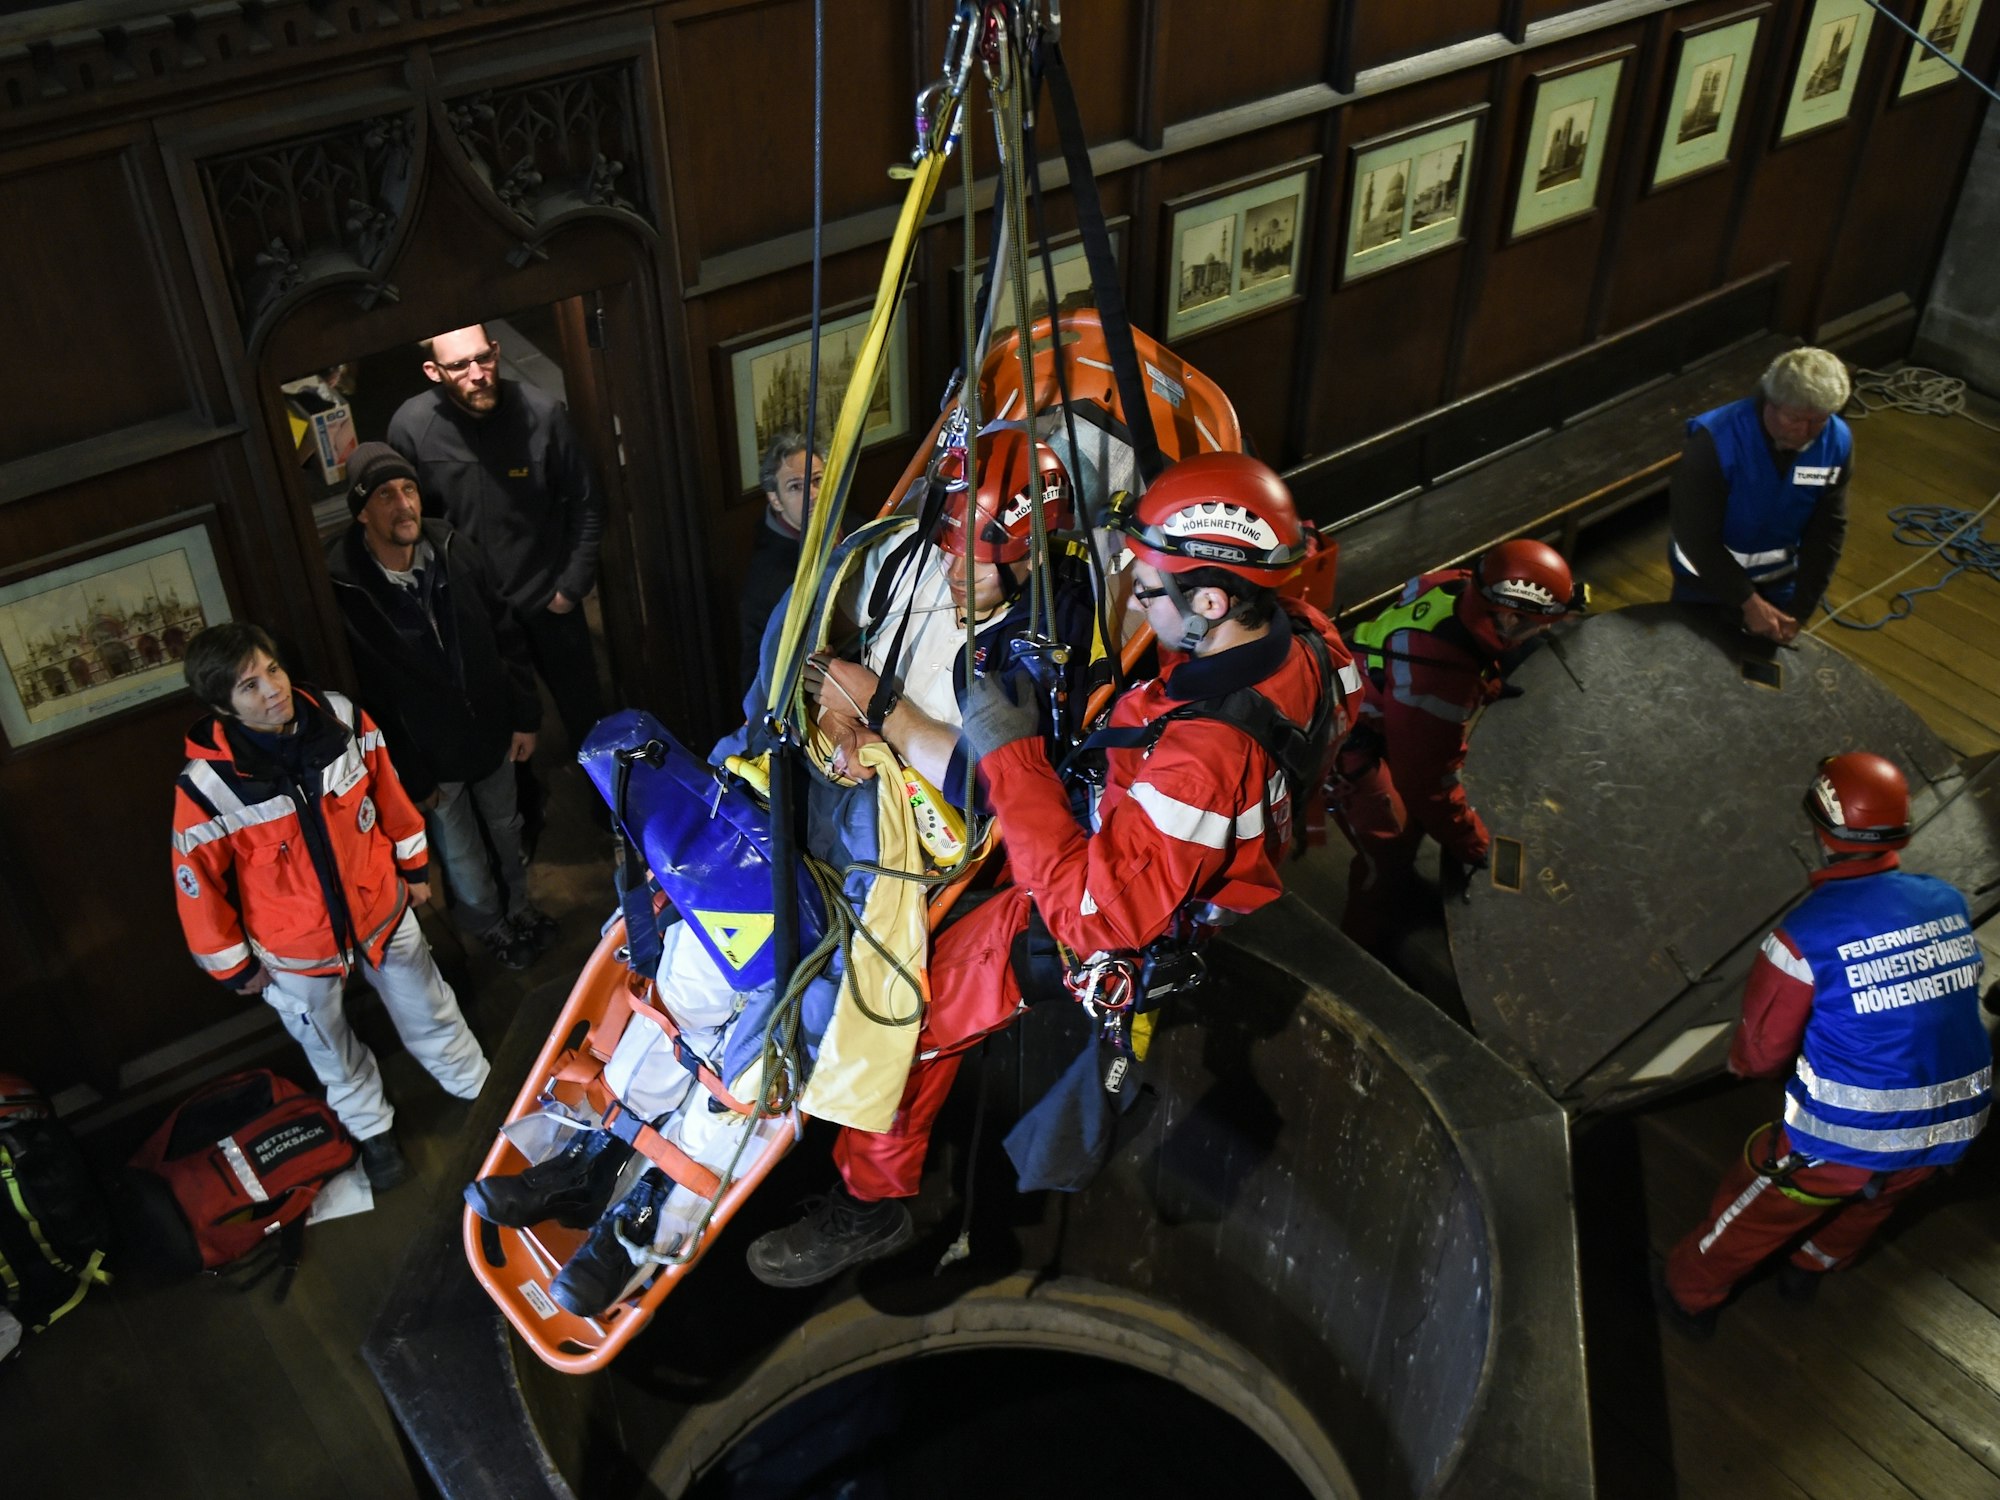 Höhenretter der Feuerwehr und angehende Notfallassistenten zeigen am 19.04.2014 in Ulm (Baden-Württemberg) in der 70 Meter hohen Turmhalle des Ulmer Münsters eine Höhenrettung.